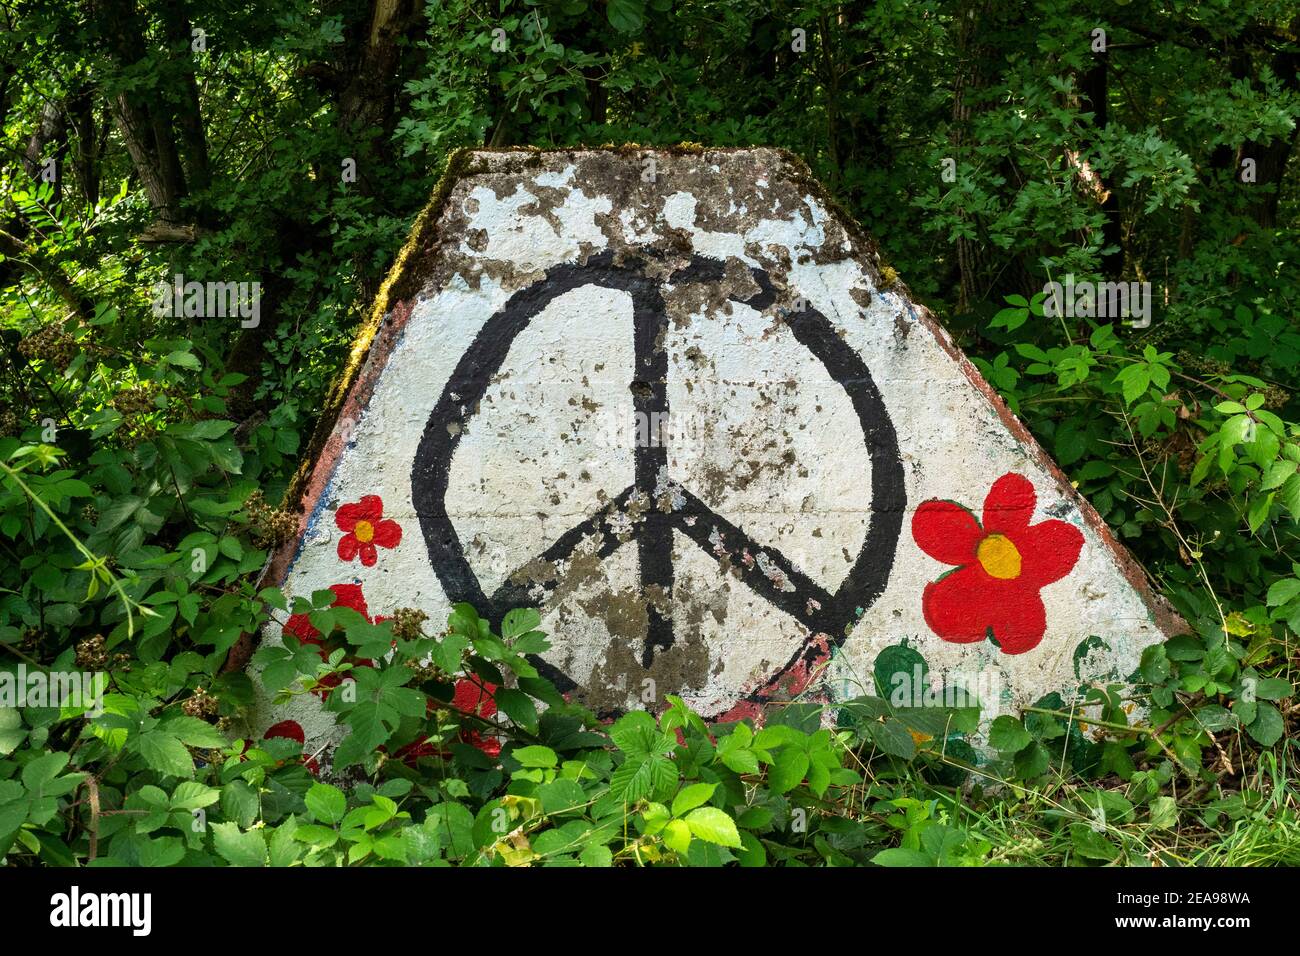 Signe de paix sur la ligne de houle, ancienne barrière anti-char de la ligne Siegfried près de Mettlach-Orscholz, vallée de Saar, Sarre, Allemagne Banque D'Images